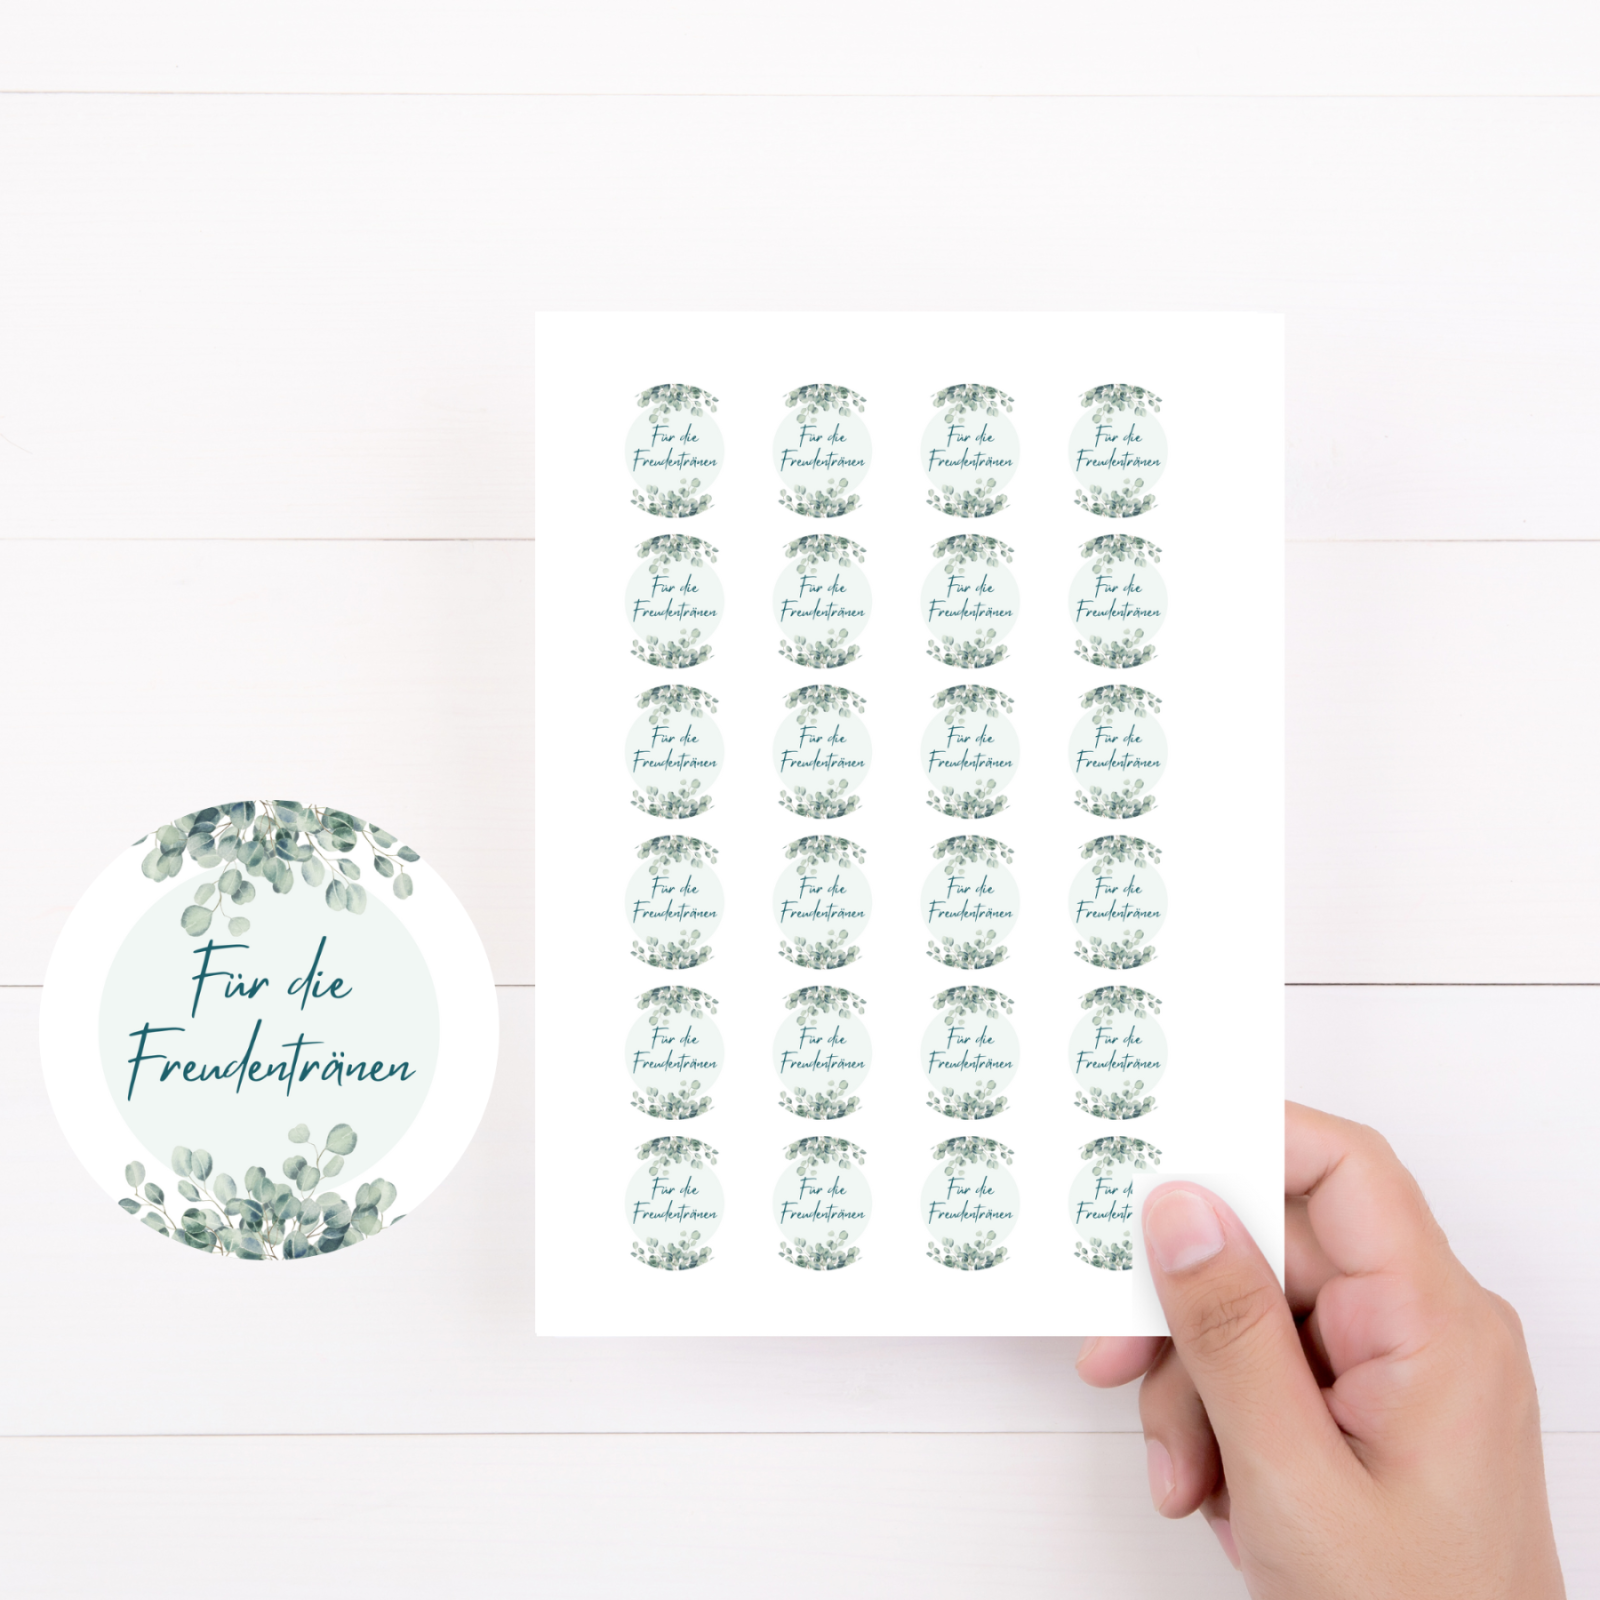 24 Aufkleber für die Freudentränen zur Hochzeit- Freudentränentaschentücher selbst gestalten mit